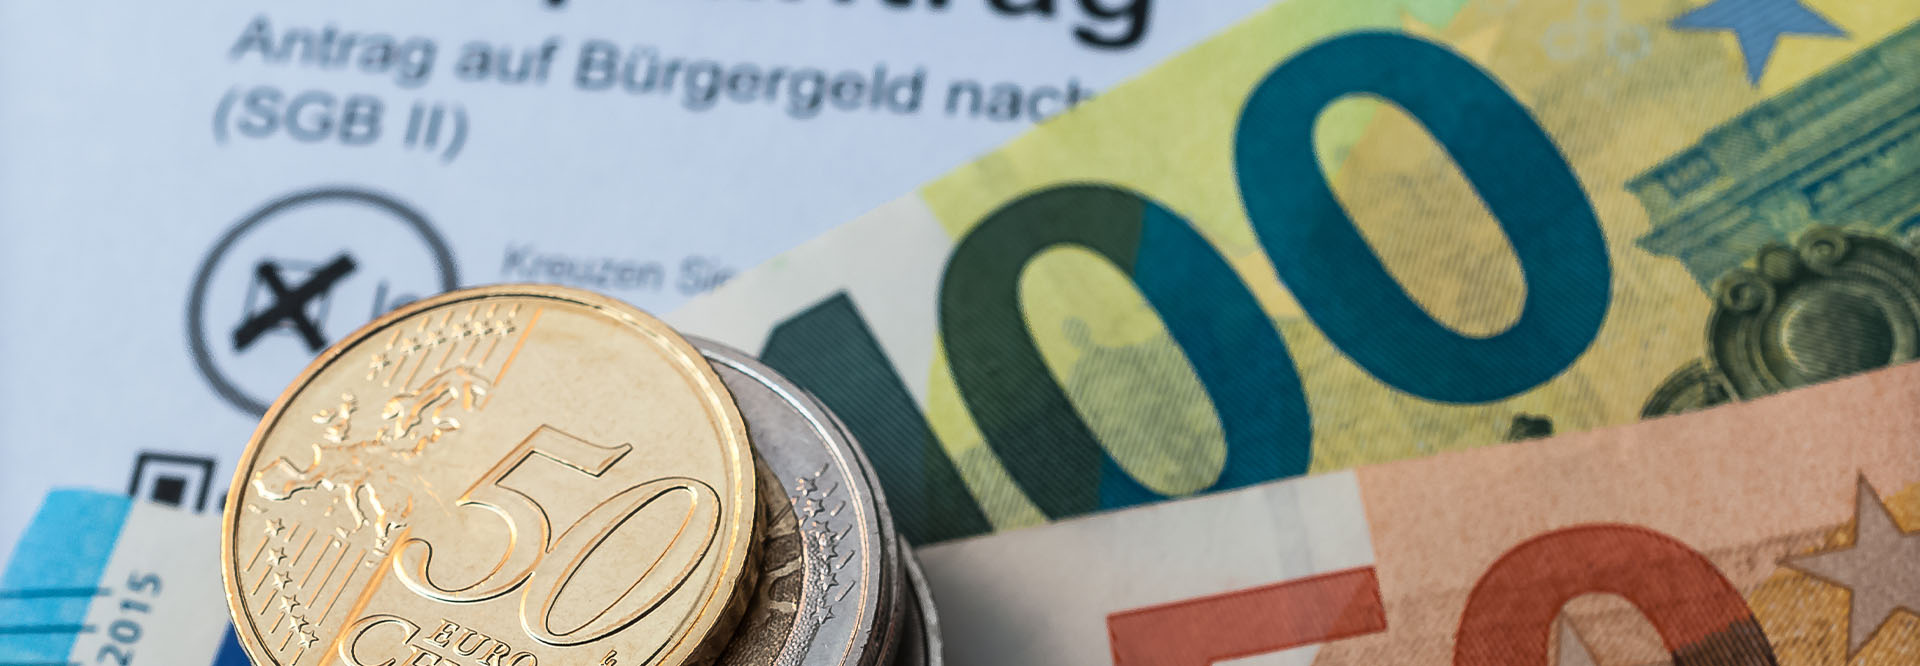 Ein Stapel Münzen und einige Euro-Scheine liegen auf einem Bürgergeld-Antrag.